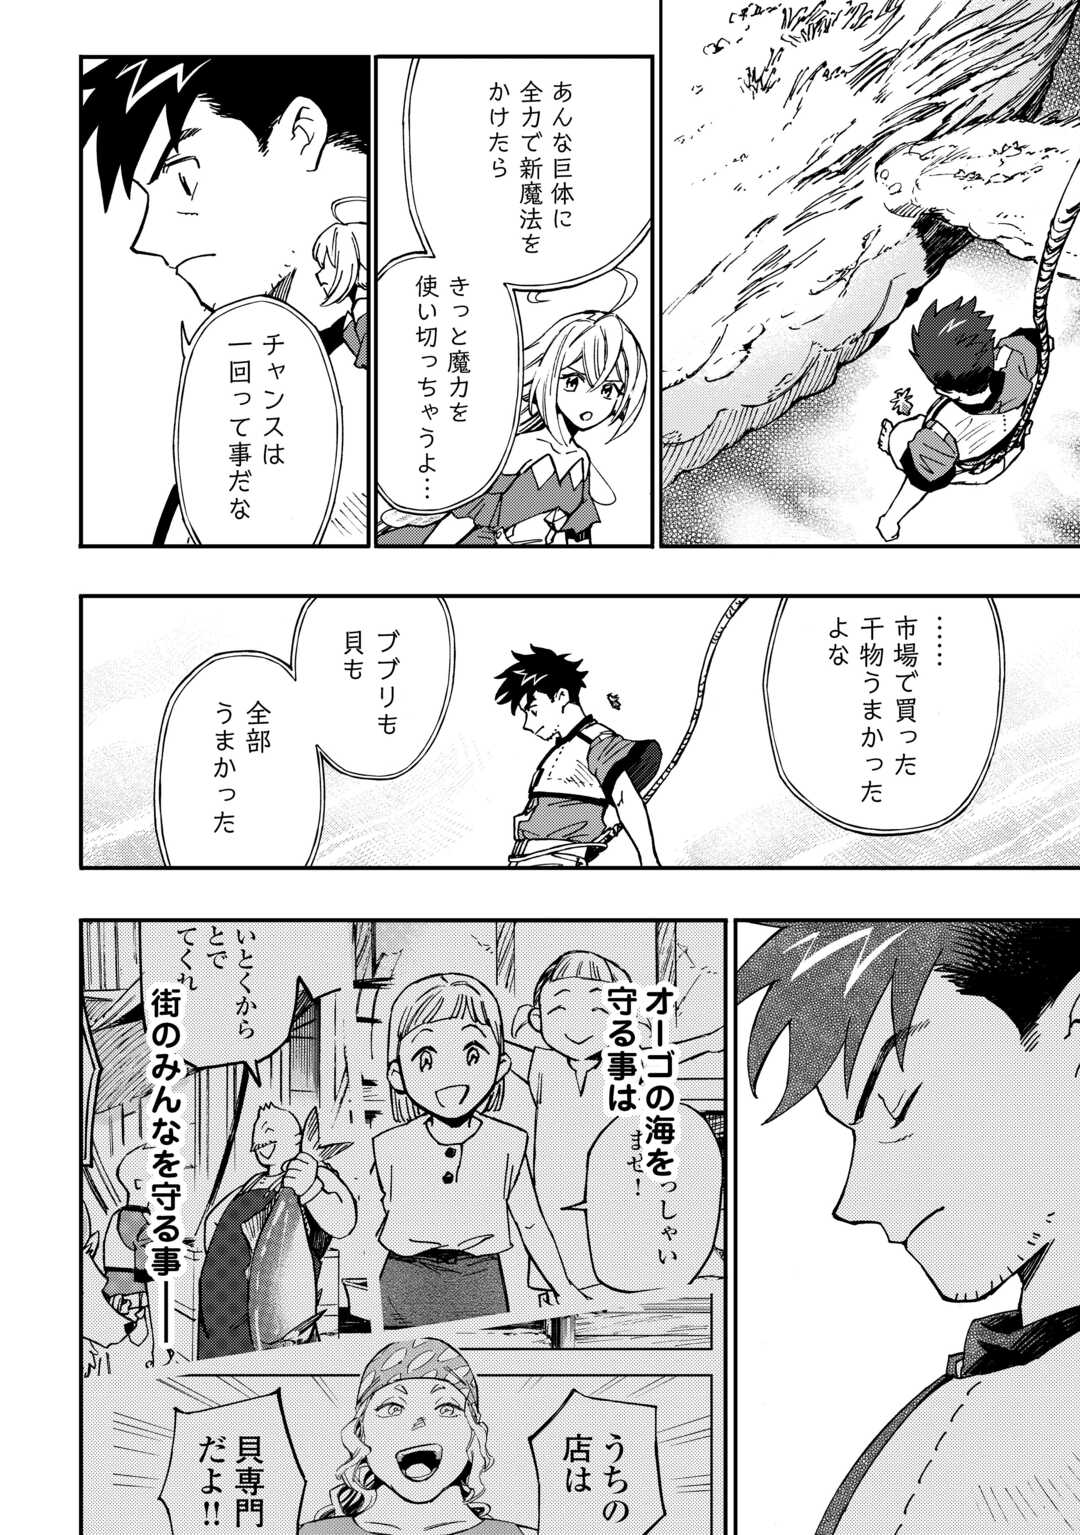 Yosoji No Ossan, Kamisama Kara Cheat Nouryoku O 9-ko Morau - Chapter 25 - Page 2